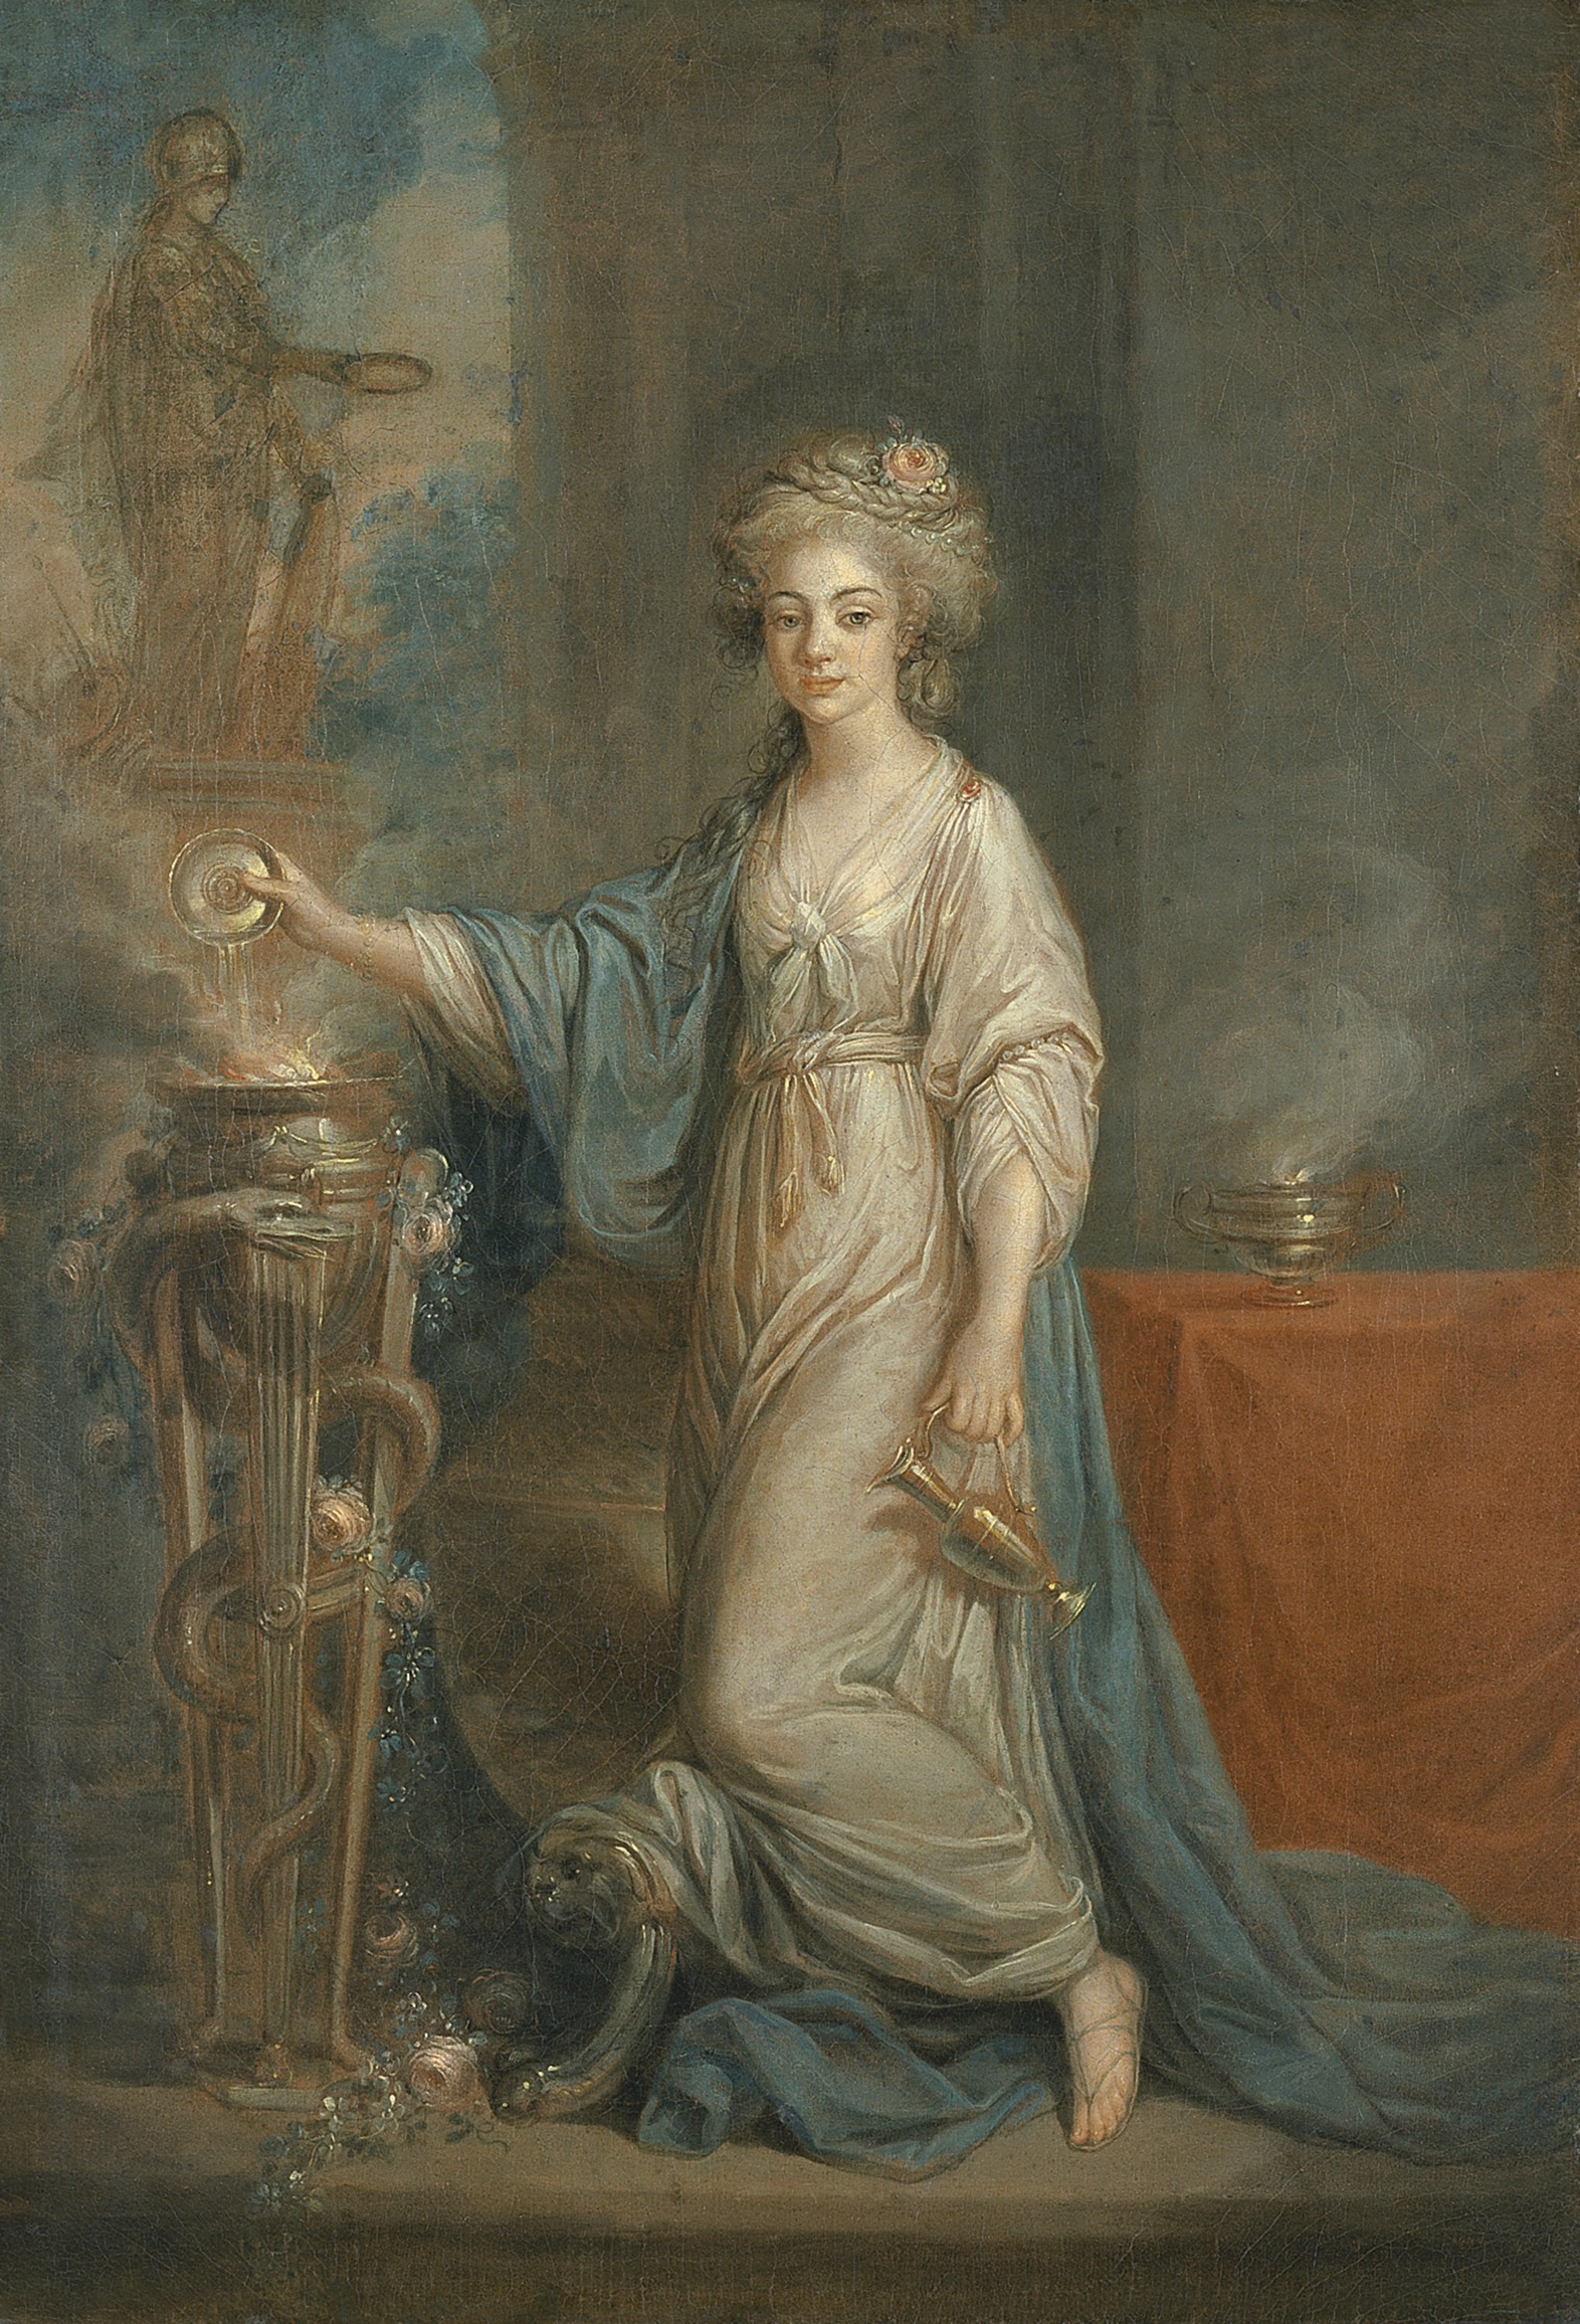 Portrait of a Lady as a Vestal Virgin. Retrato de una mujer como una Vestal, década de 1780